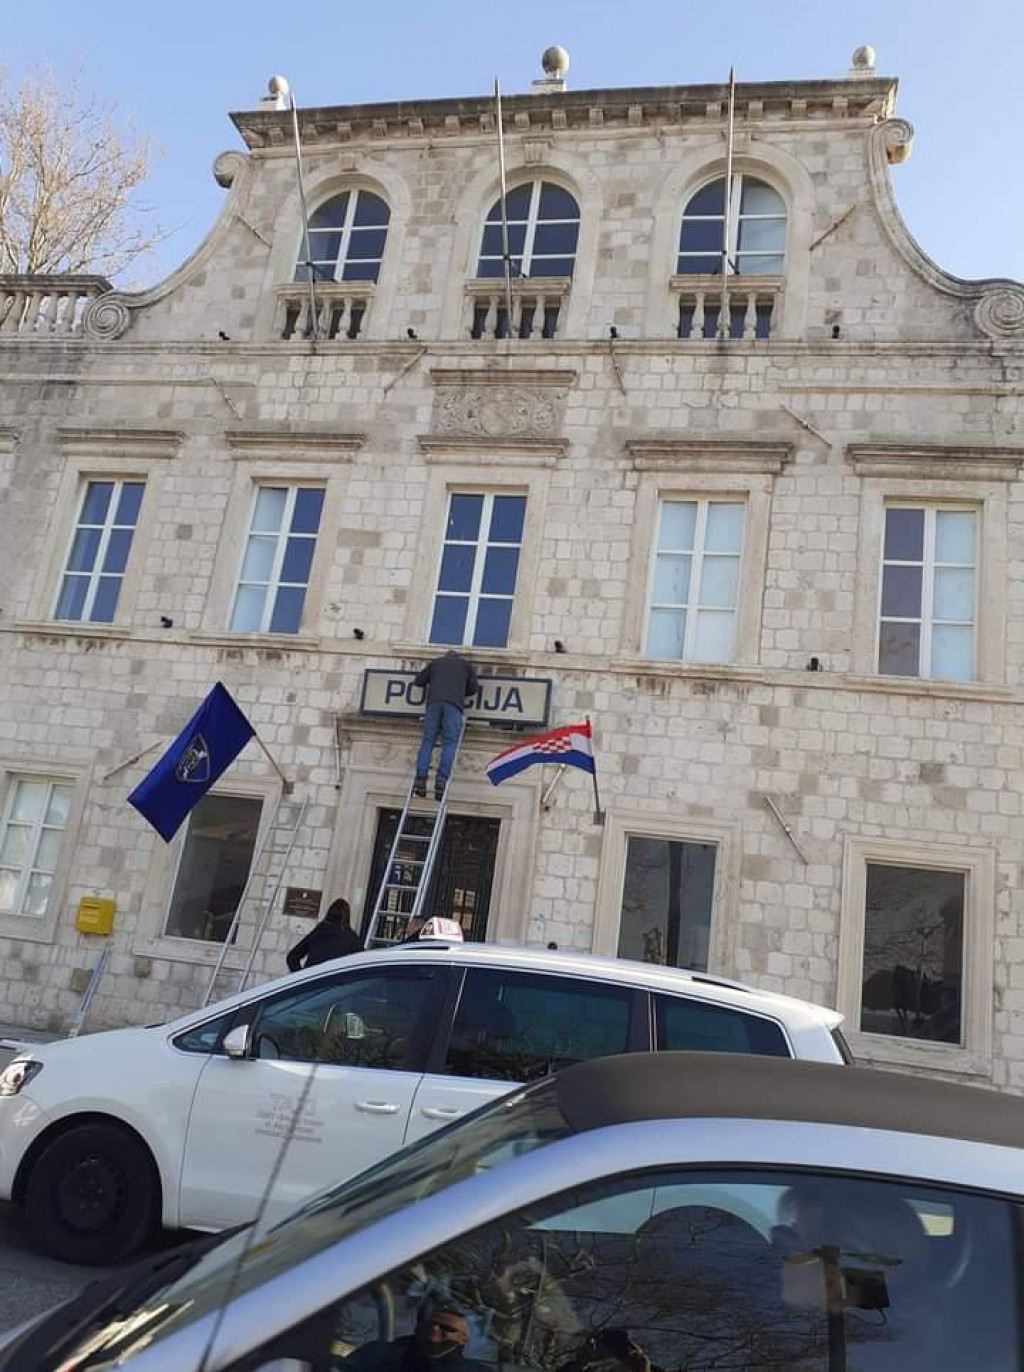 &lt;p&gt;Na ljetnikovac Pucić na Pilama postavljene zastave i znak policije&lt;/p&gt;
